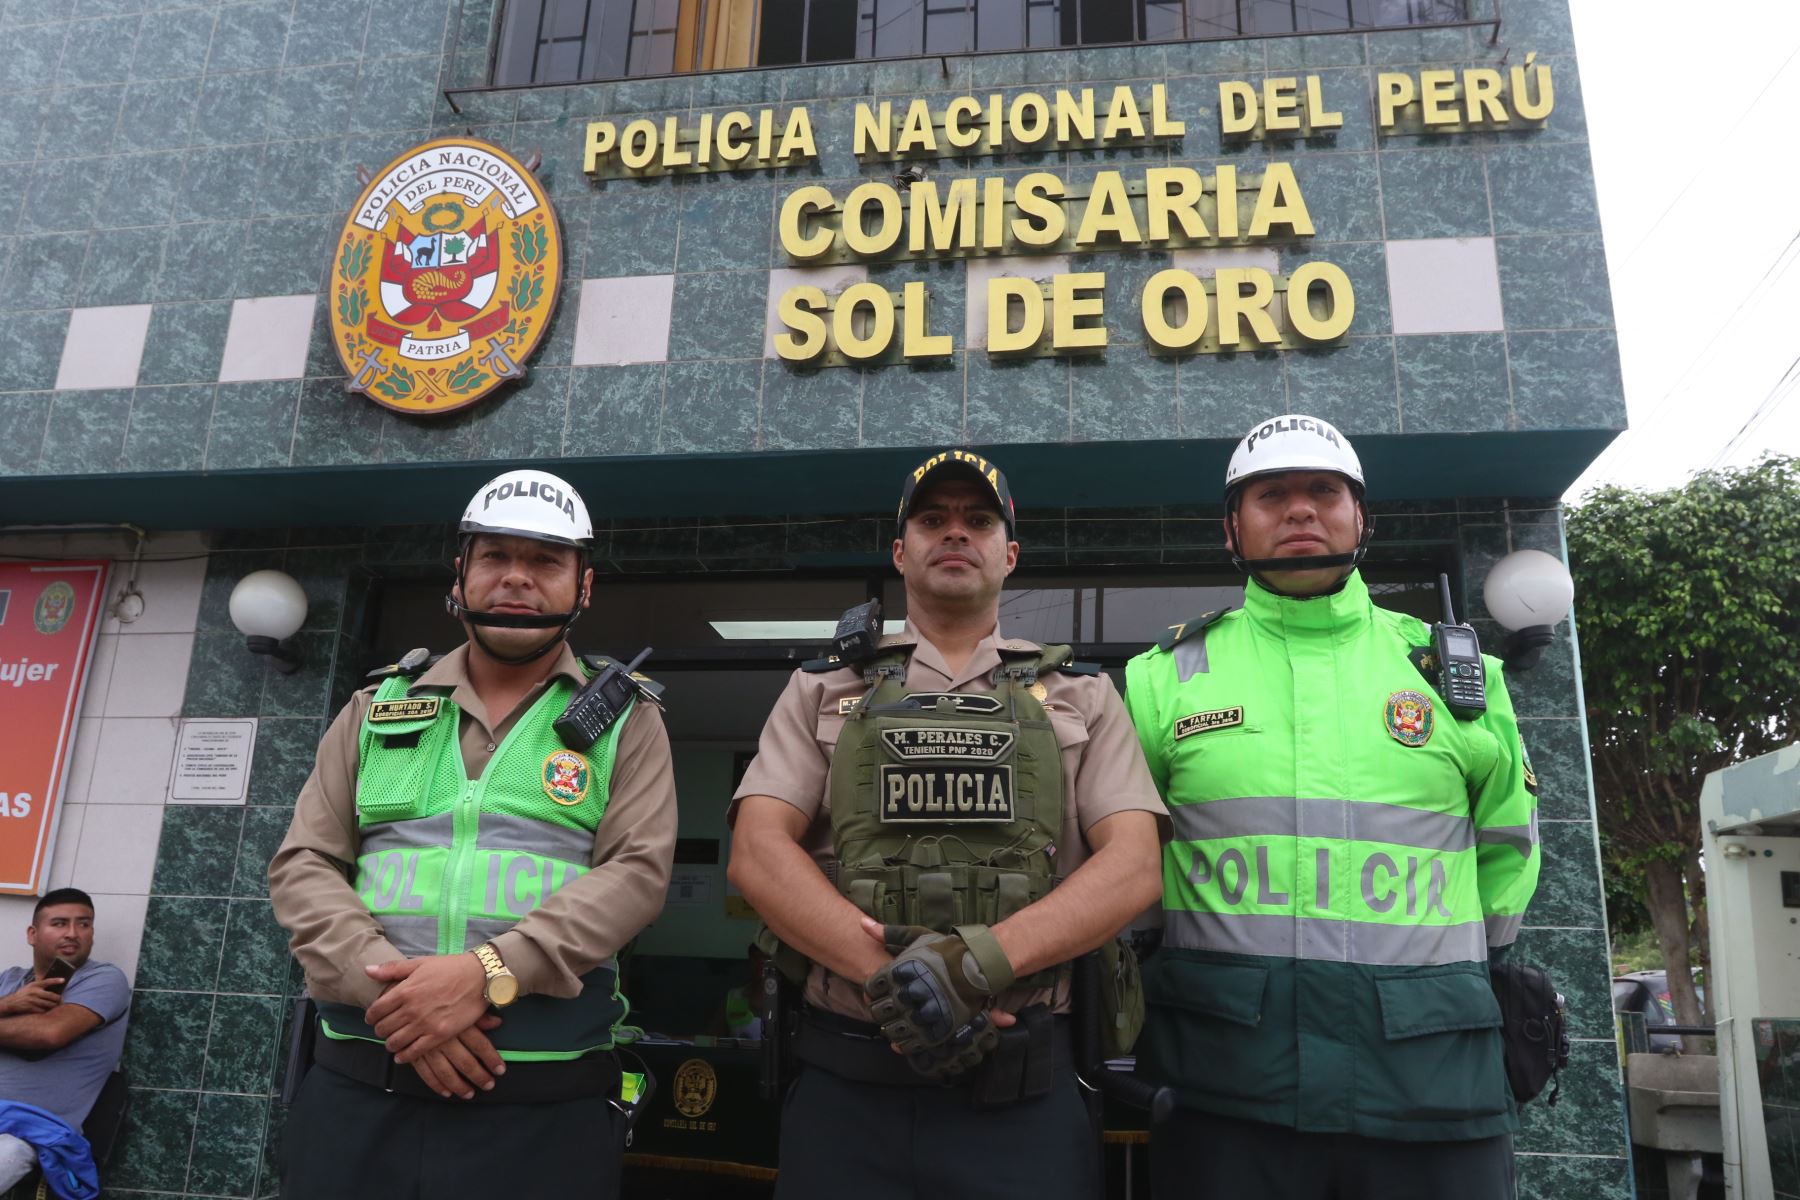 El momento más conmovedor de este rescate lo protagonizó el teniente PNP Martín Perales, de la comisaría de Sol de Oro, quien se acercó al auto de los secuestradores para abrirle la puerta a la víctima y ponerla a buen recaudo.